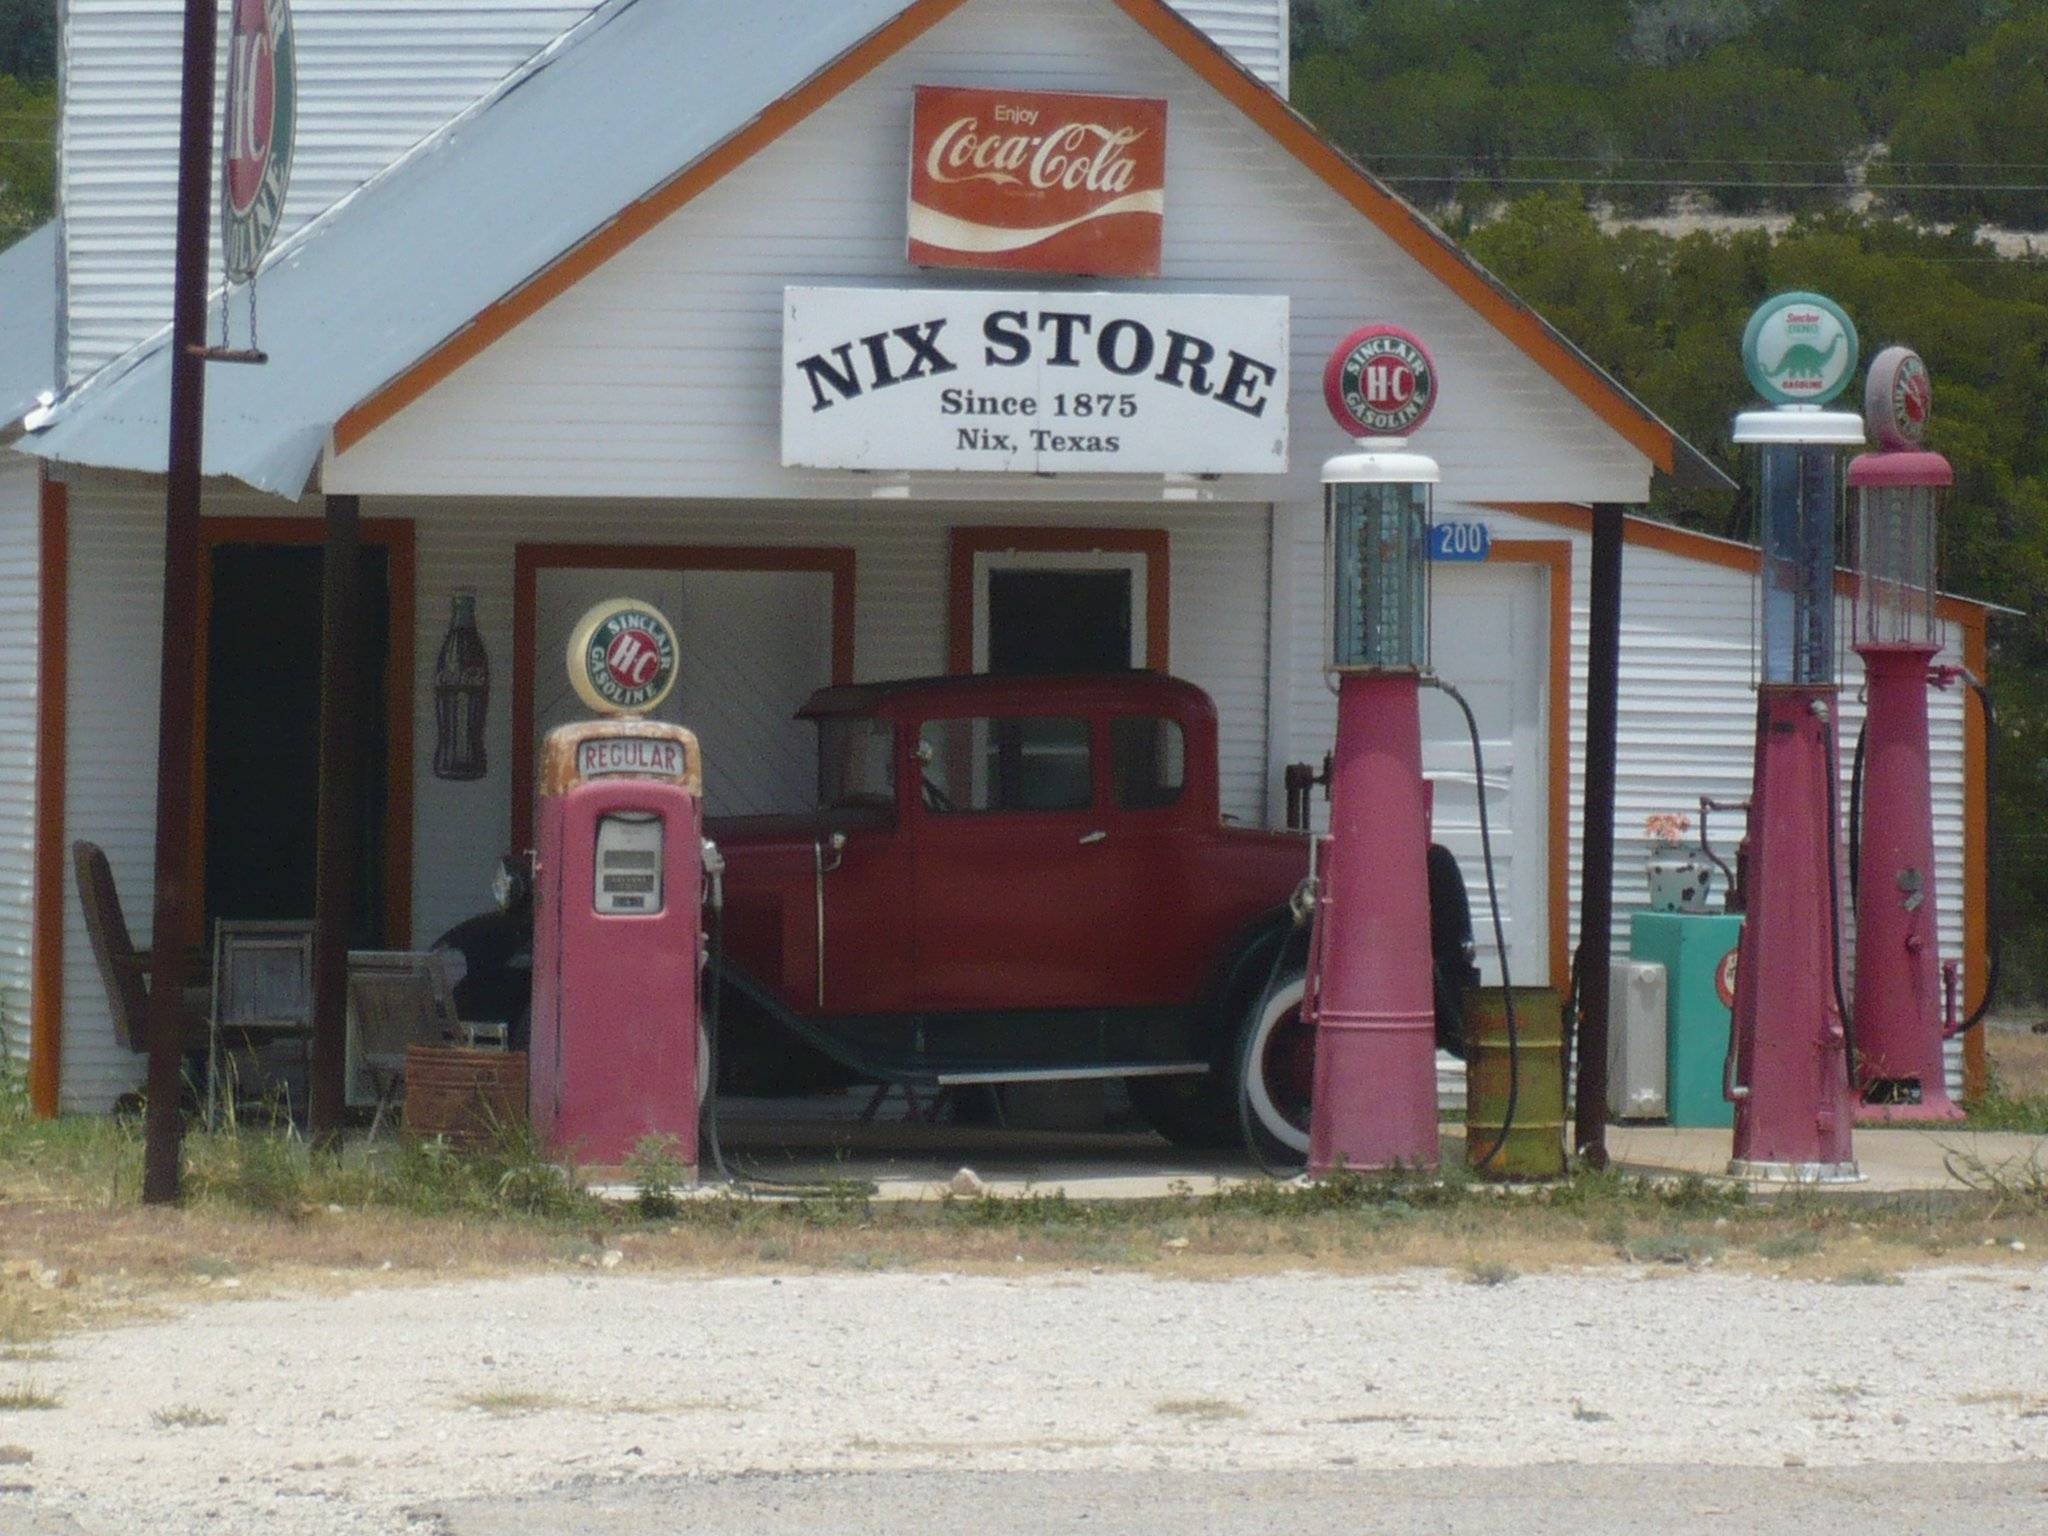 Il Nix Store dal 1875 in Texas...